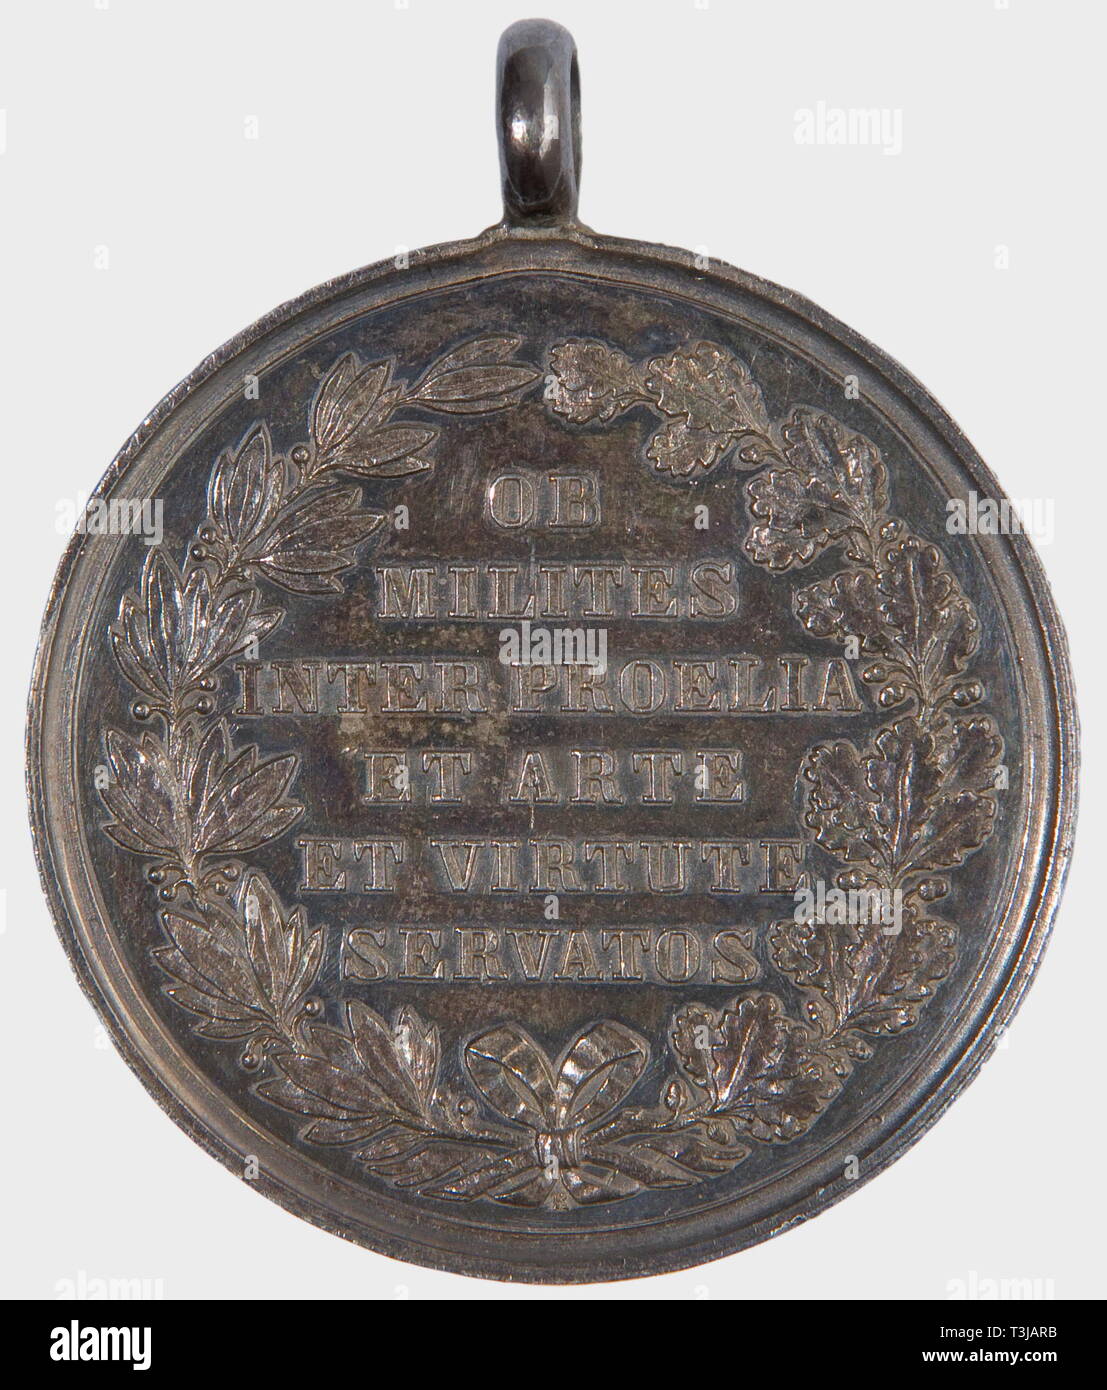 Une médaille d'argent d'honneur du Service de santé militaire, modèle final, la Bavière 1871 - 1914 argent avec oeillet massive, médaillé d'avers's mark 'Losch F.' sur la section du bras, marche arrière type plus récent médaillé d'inscription et mark 'R' sous la couronne de proue. Poids 27,5 g. Diamètre 40,5 mm. Dans une vieille boîte de papier endommagé, avec de l'encre inscription 'Für Generalarzt M. Mayrhofer...' (OEK) 498. De plus grande rareté - seulement 40 attribué. historique, historique, 1910, 20e siècle, médaille, décoration, Médailles, décorations, d'un insigne d'honneur, d'un insigne d'honneur, les insignes d'honneur, Additional-Rights Clearance-Info-badg,-Not-Available Banque D'Images